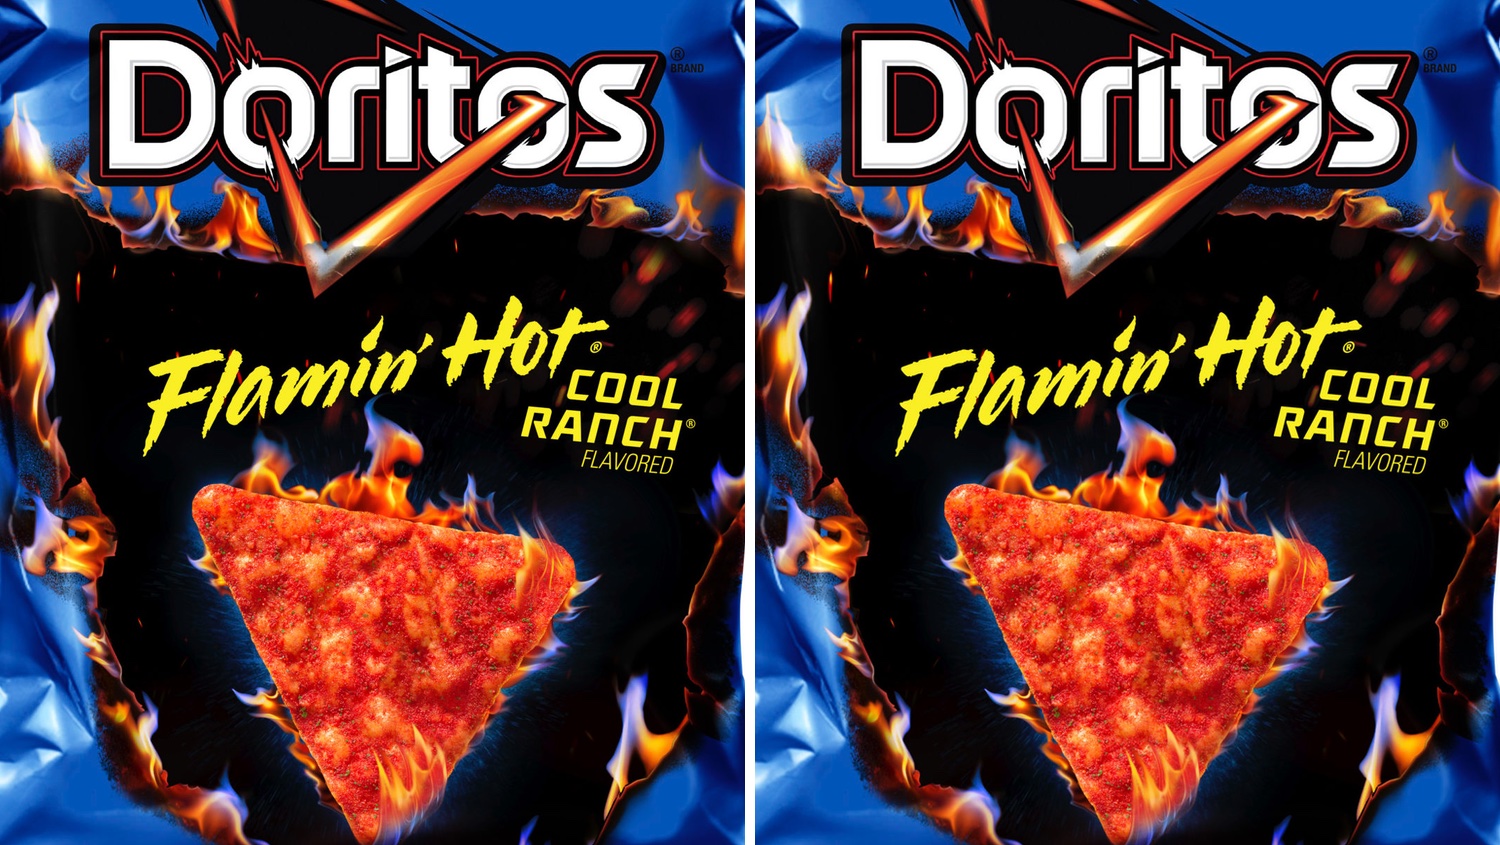 Doritos Flamin' Hot Cool Ranch flavor